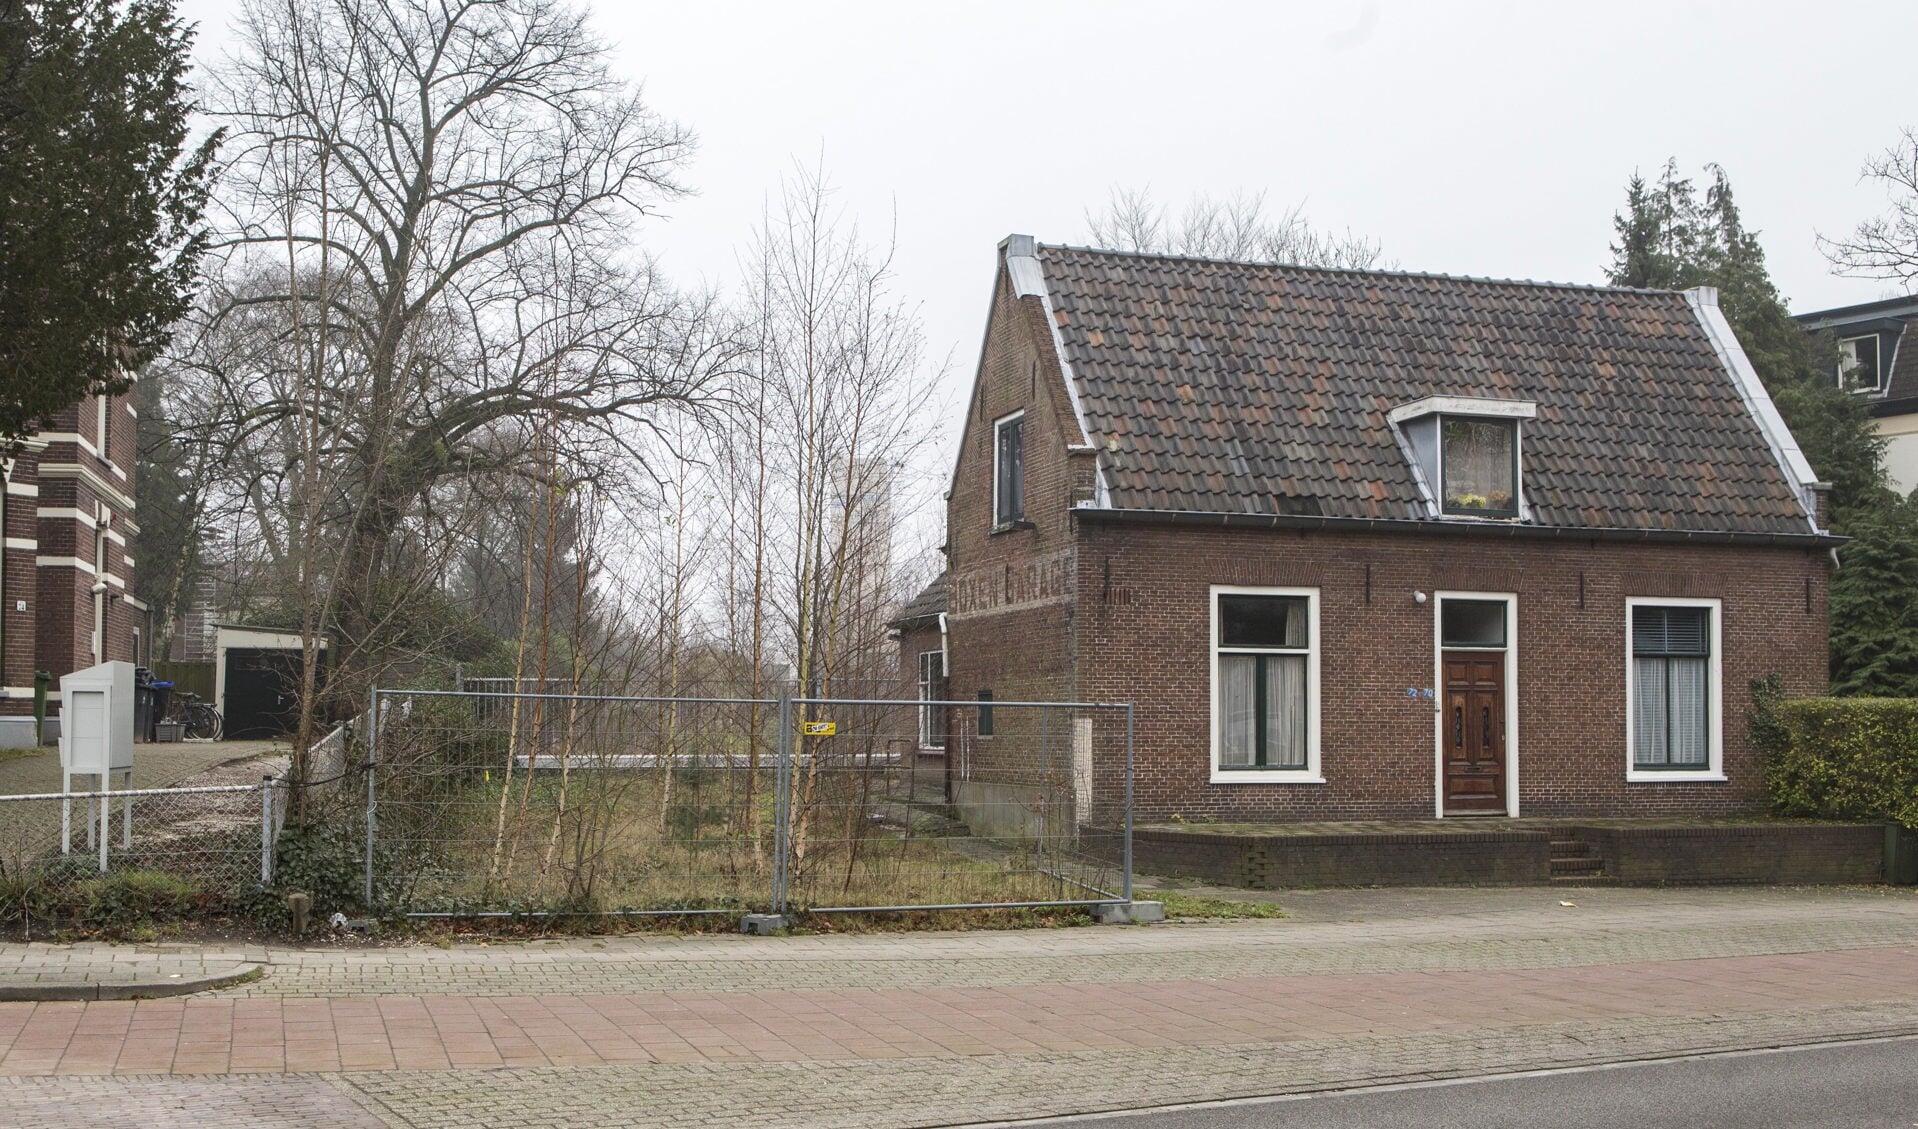 Het molenaarshuisje aan de 's-Gravelandseweg, waar de verbindingslaan tussen het raadhuis en de Boomberg vlakbij komt.